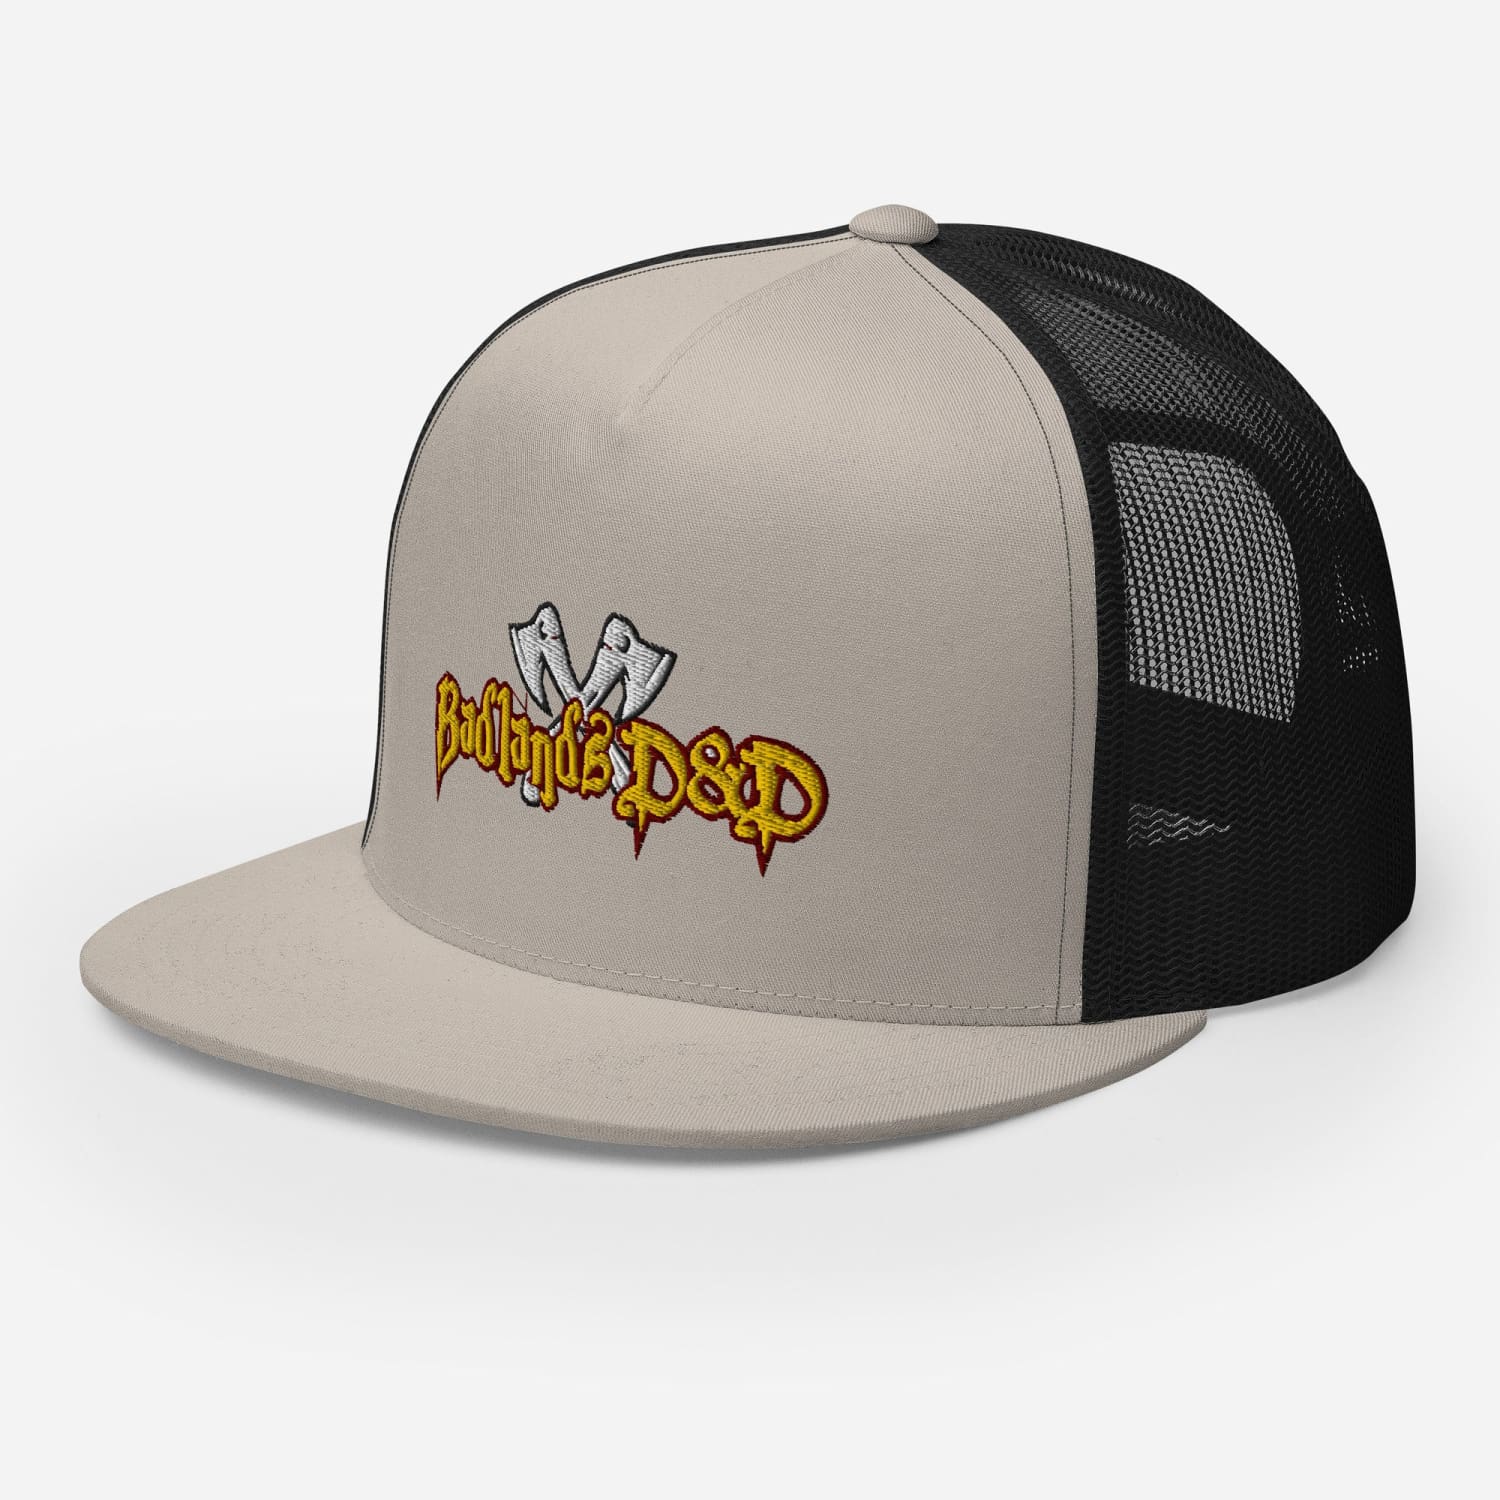 Badlands D&D Logo Classic Trucker Cap